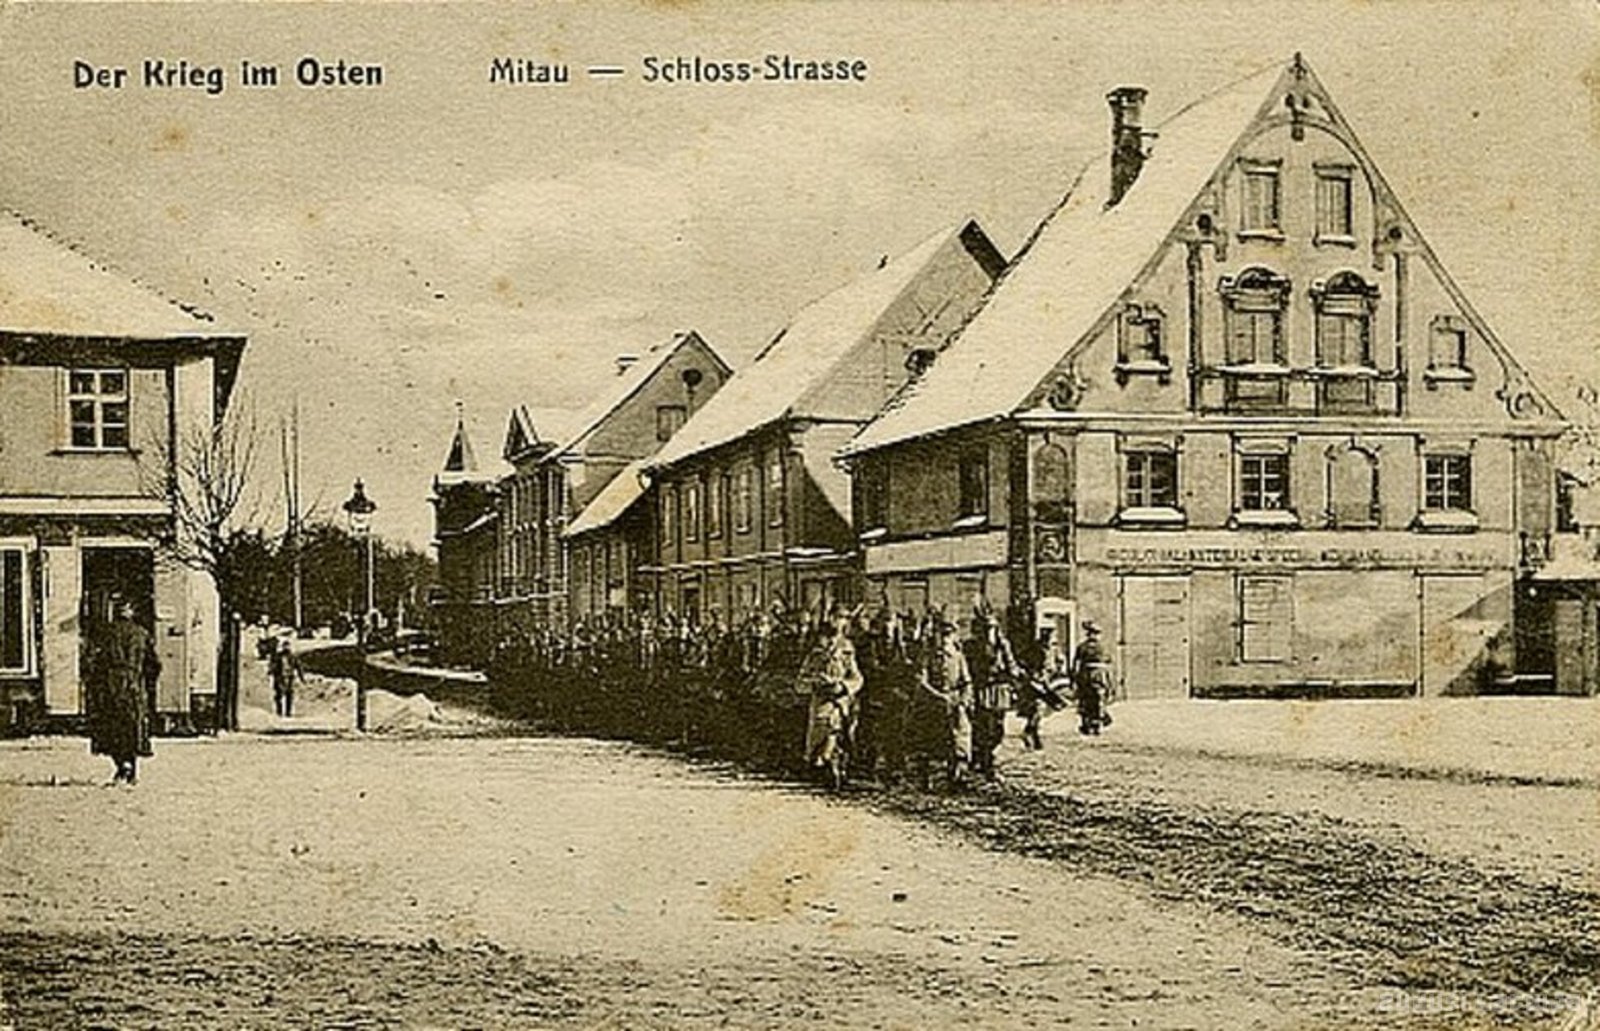 The war in the East. Mitau - Schloss-Strasse, Jelgava. Castle Street